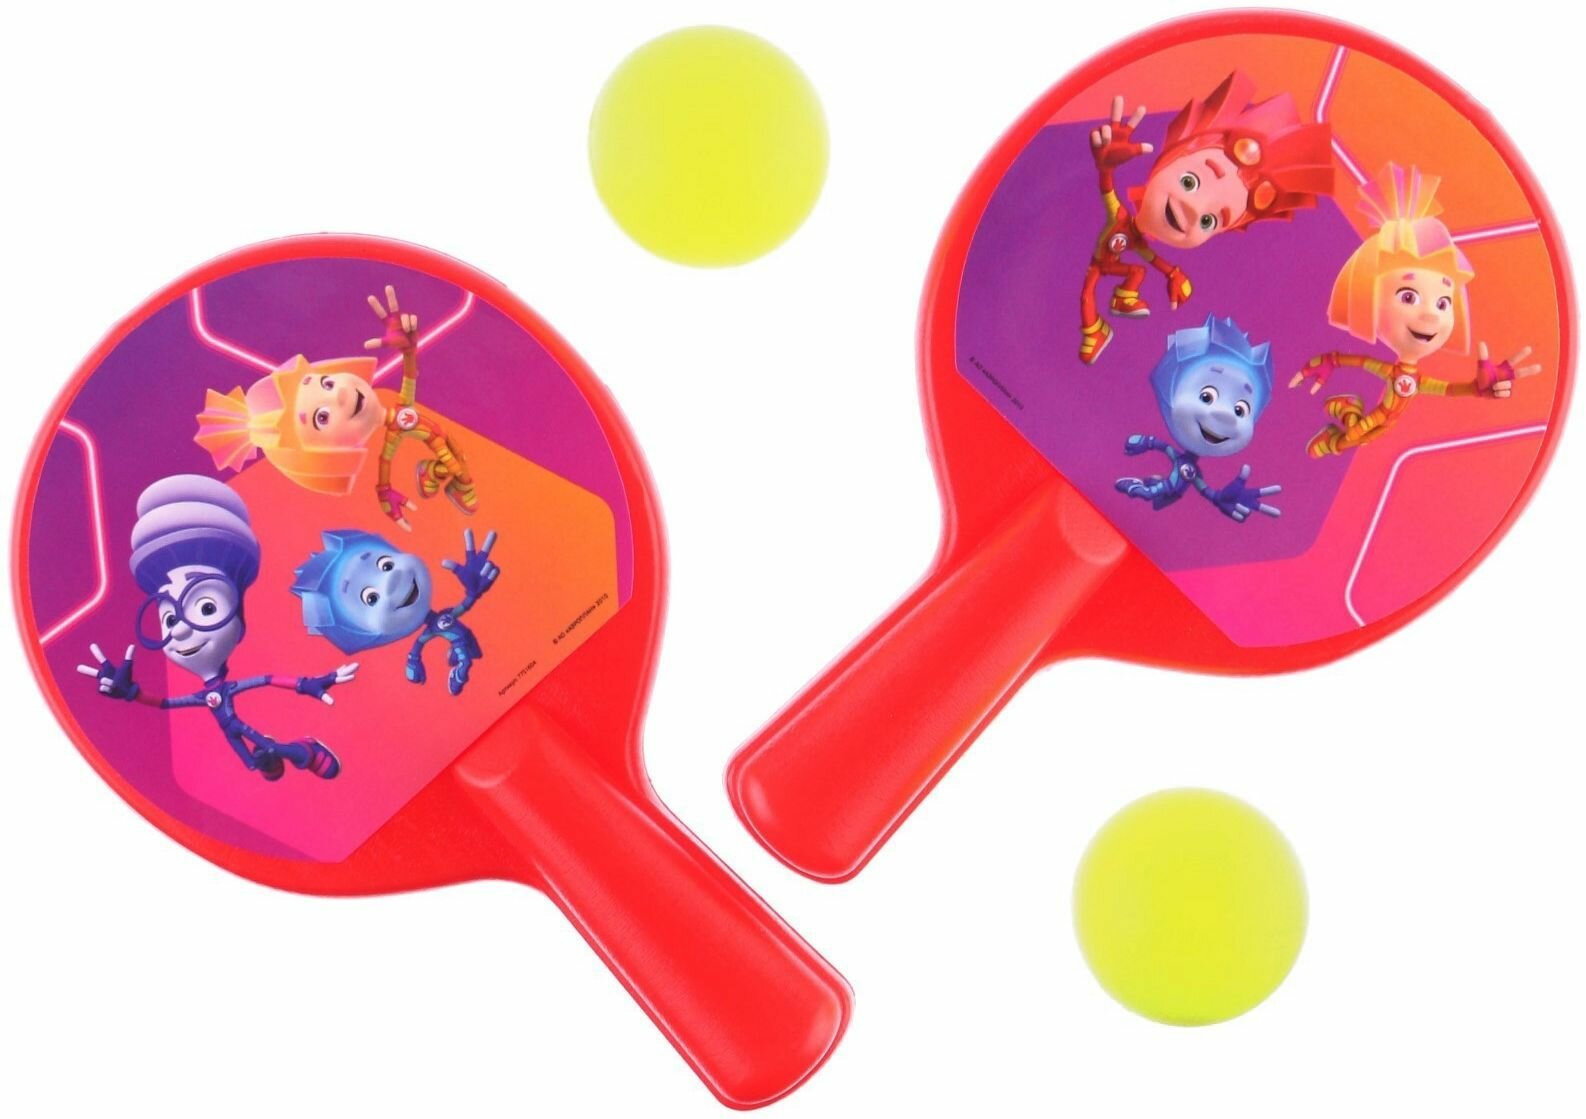 Детский игровой спортивный набор "Фиксики" для настольного тенниса, в комплекте две ракетки, размер 8х12 см + два мячика